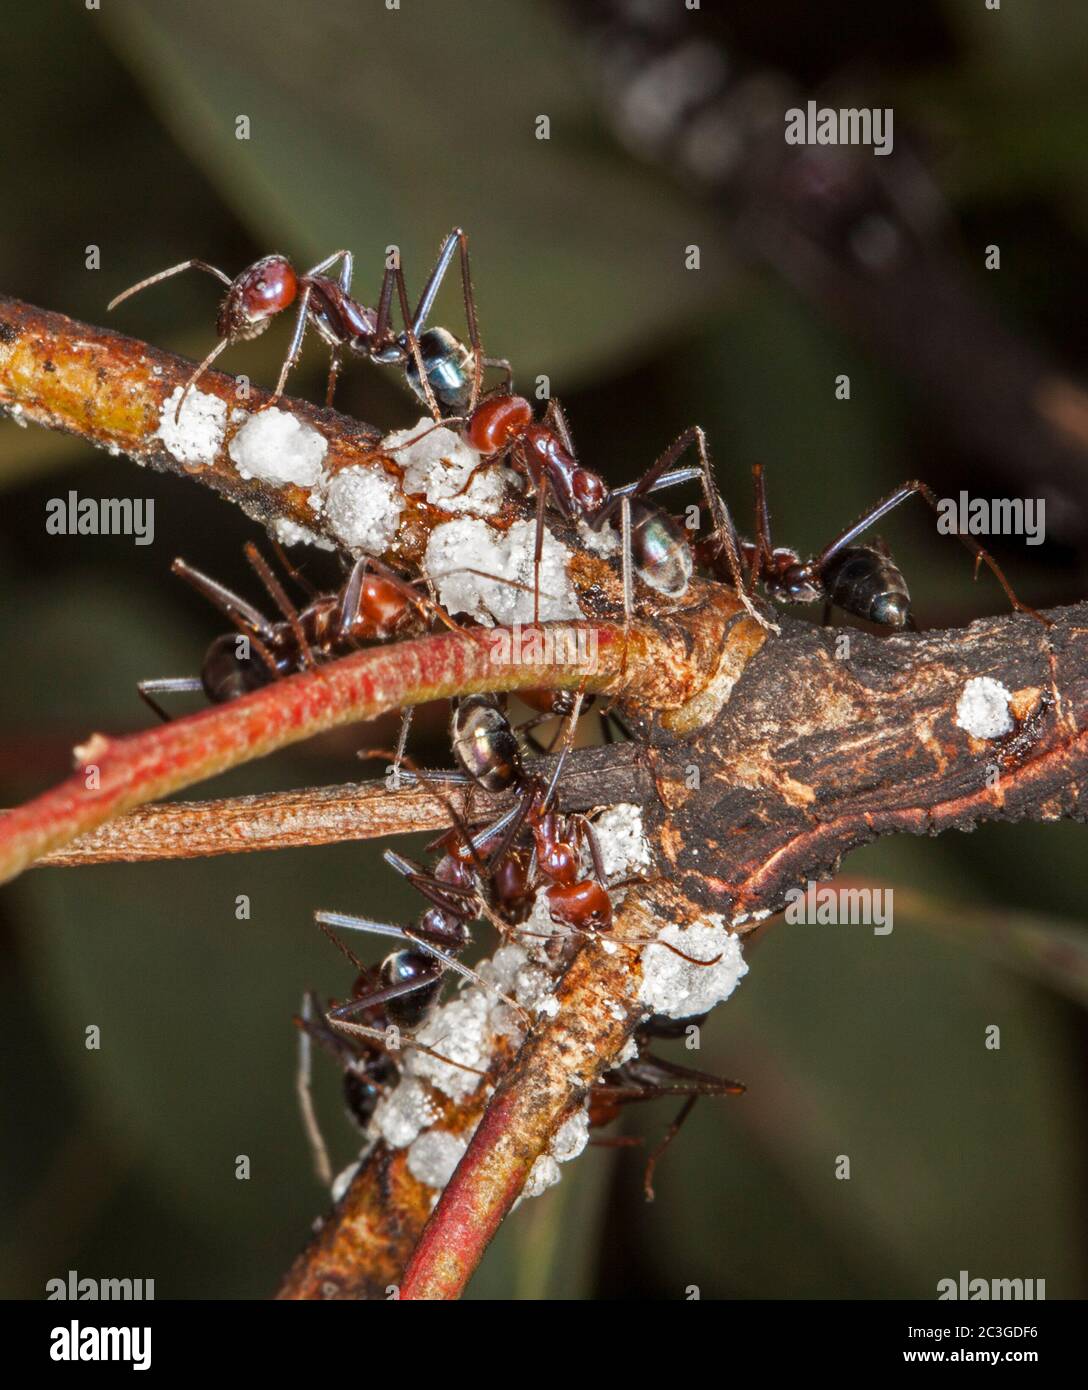 Formiche grandi rosse e nere che si nutrono su insetti di scala sul ramo di arbusto contro sfondo verde scuro Foto Stock